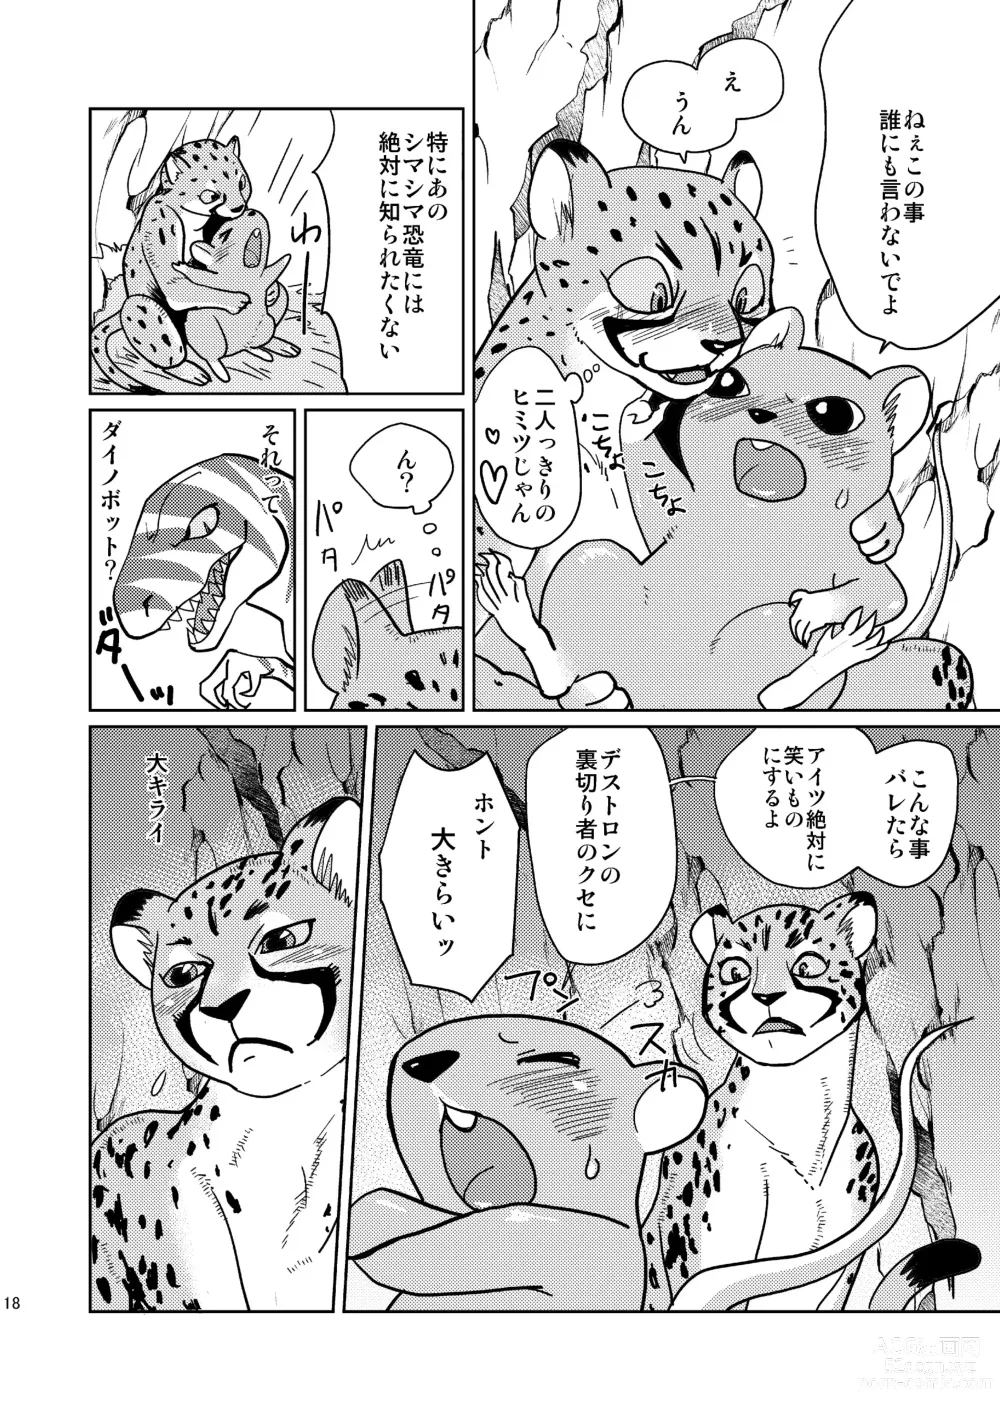 Page 18 of doujinshi Beast Mode!